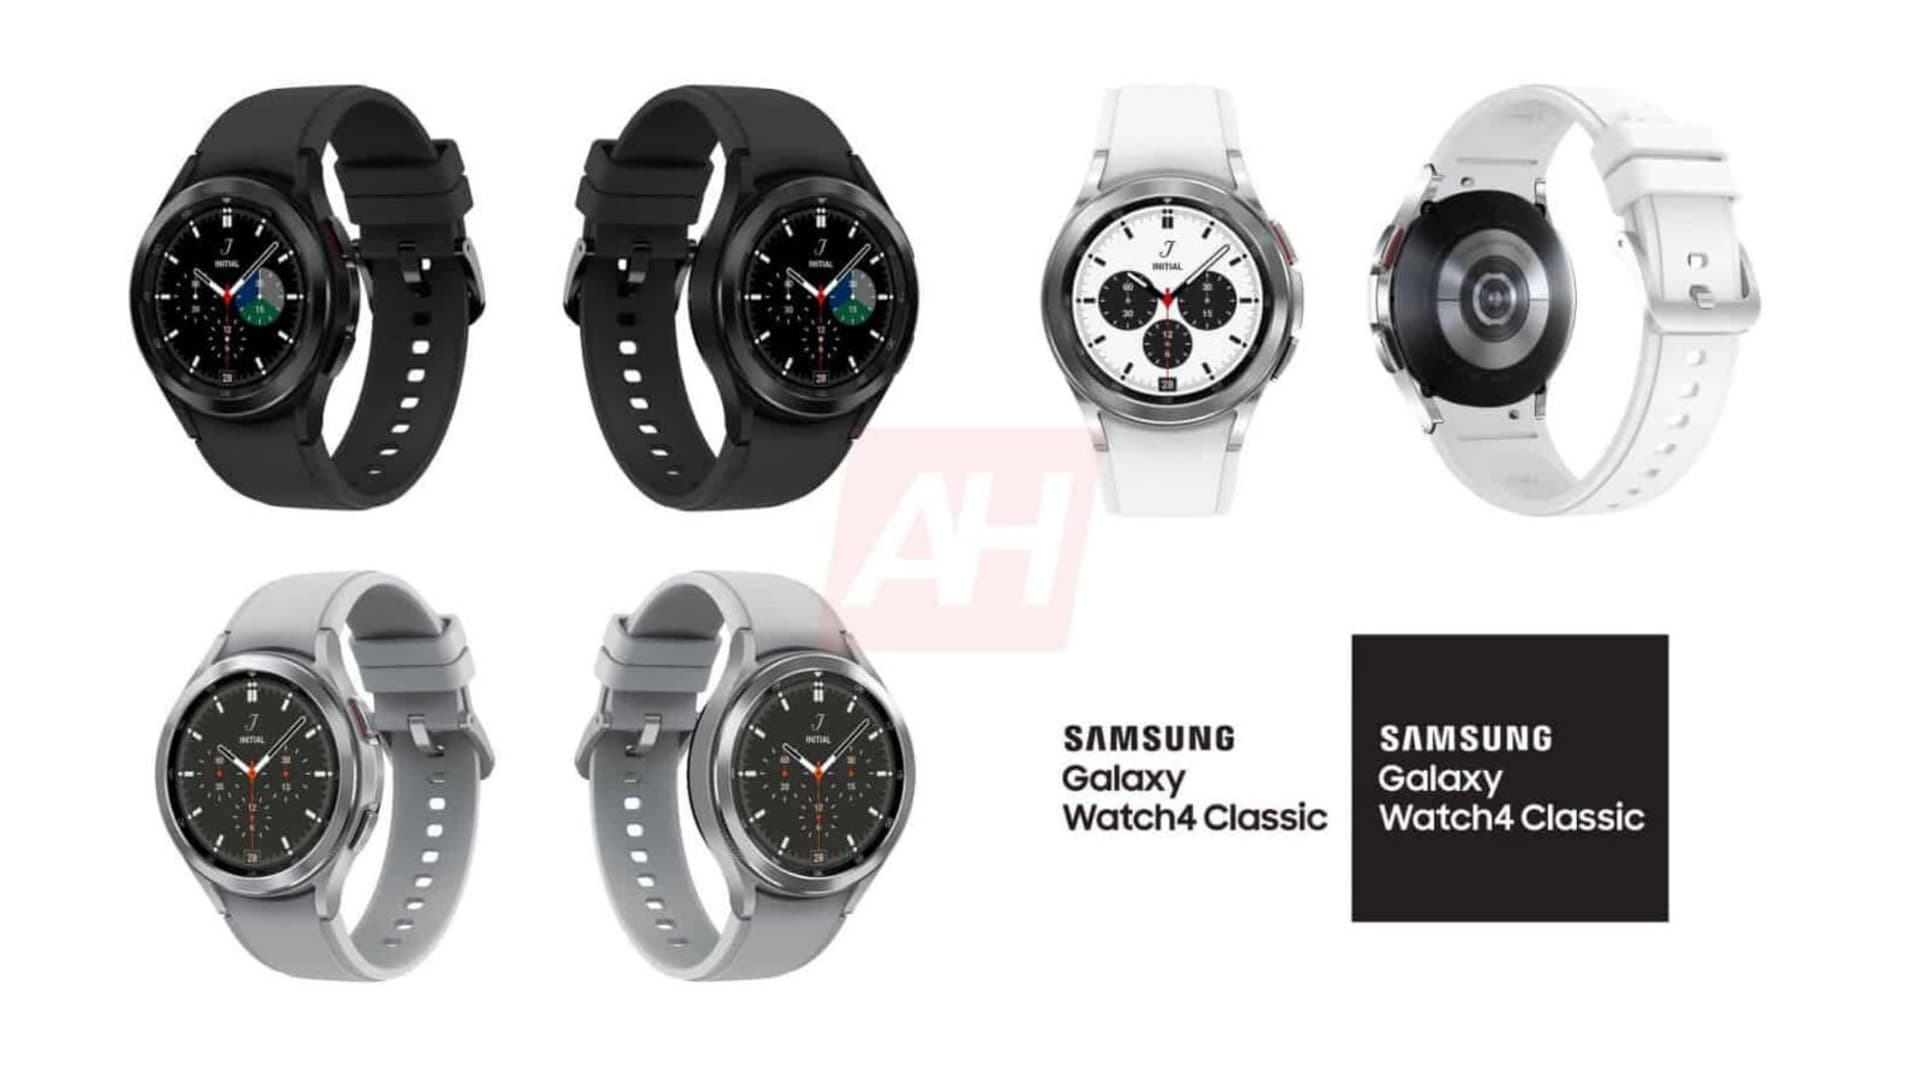 Giá bán của Samsung Galaxy Buds 2, Samsung Galaxy Watch 4, Samsung Galaxy Watch 4 Classic được tiết lộ trước ngày ra mắt 